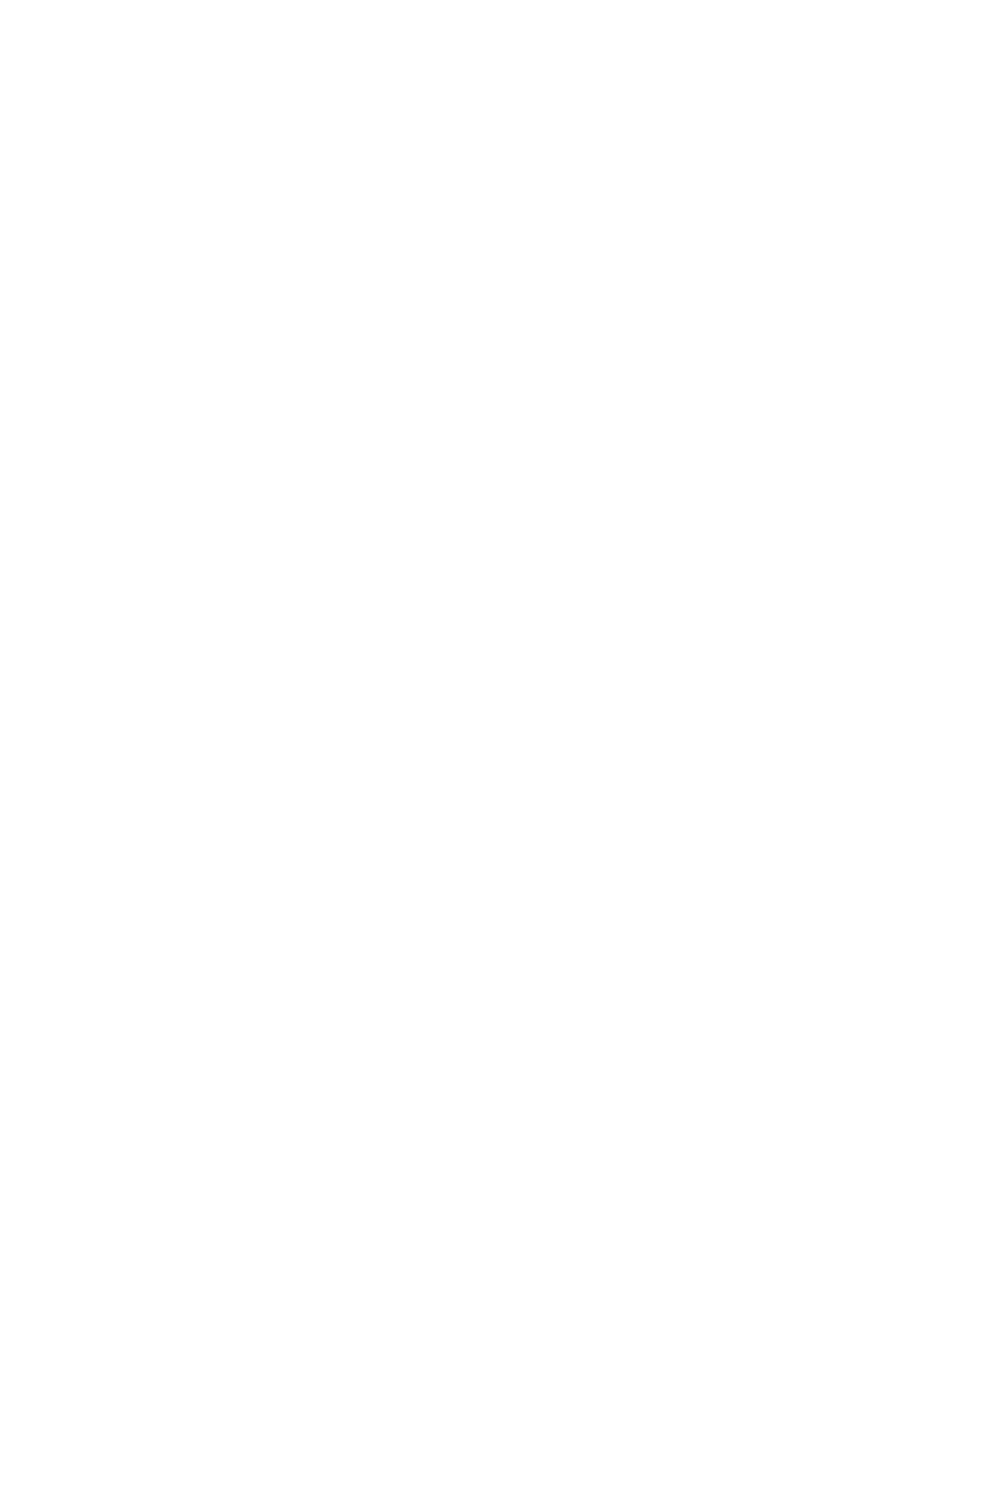 FactSet logo pour fonds sombres (PNG transparent)